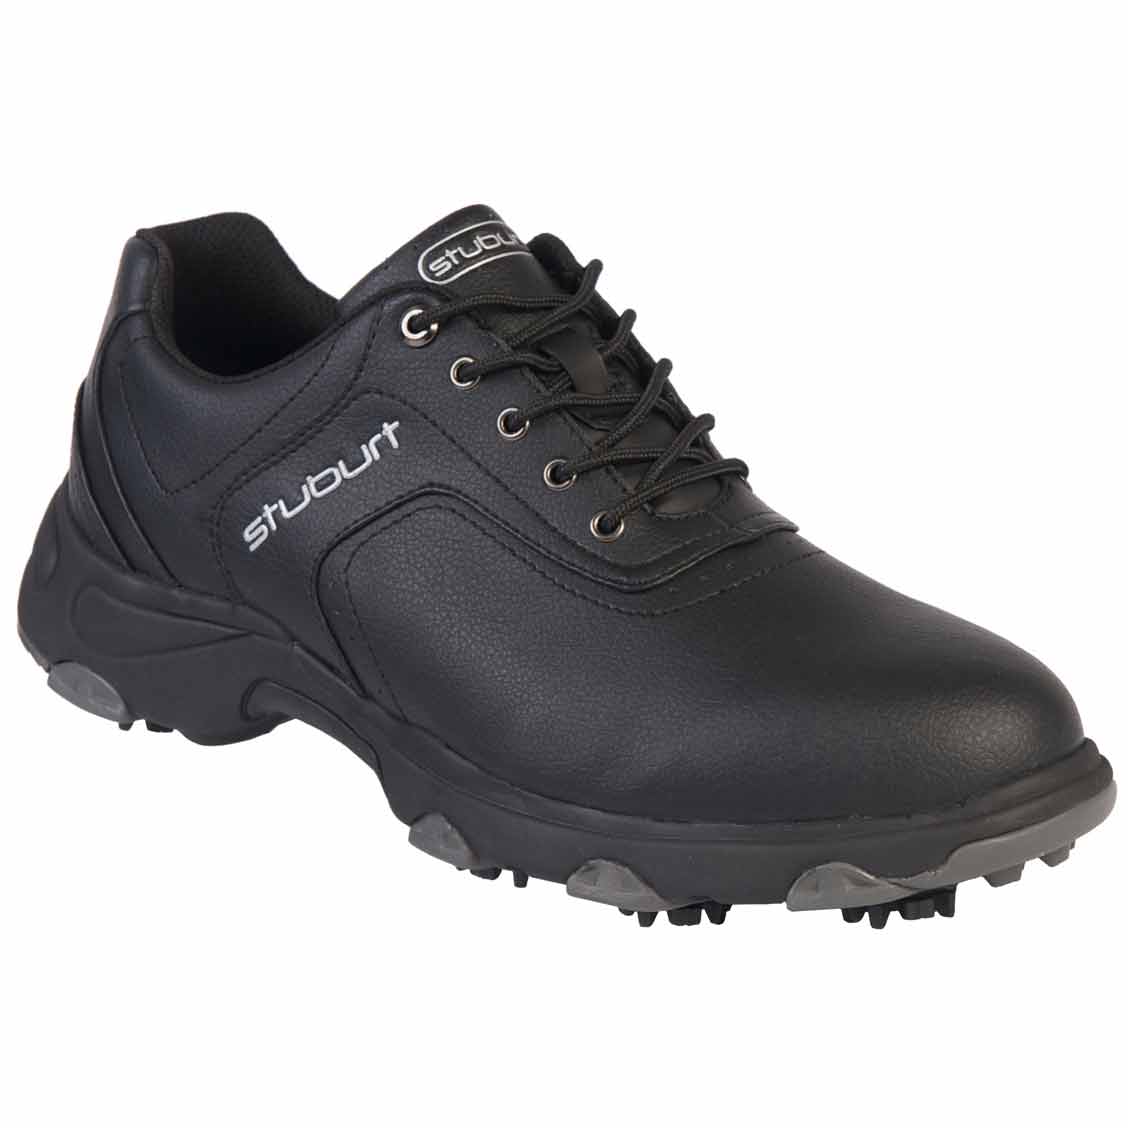 Comfort XP Golf Shoes Mens - Black - 2011